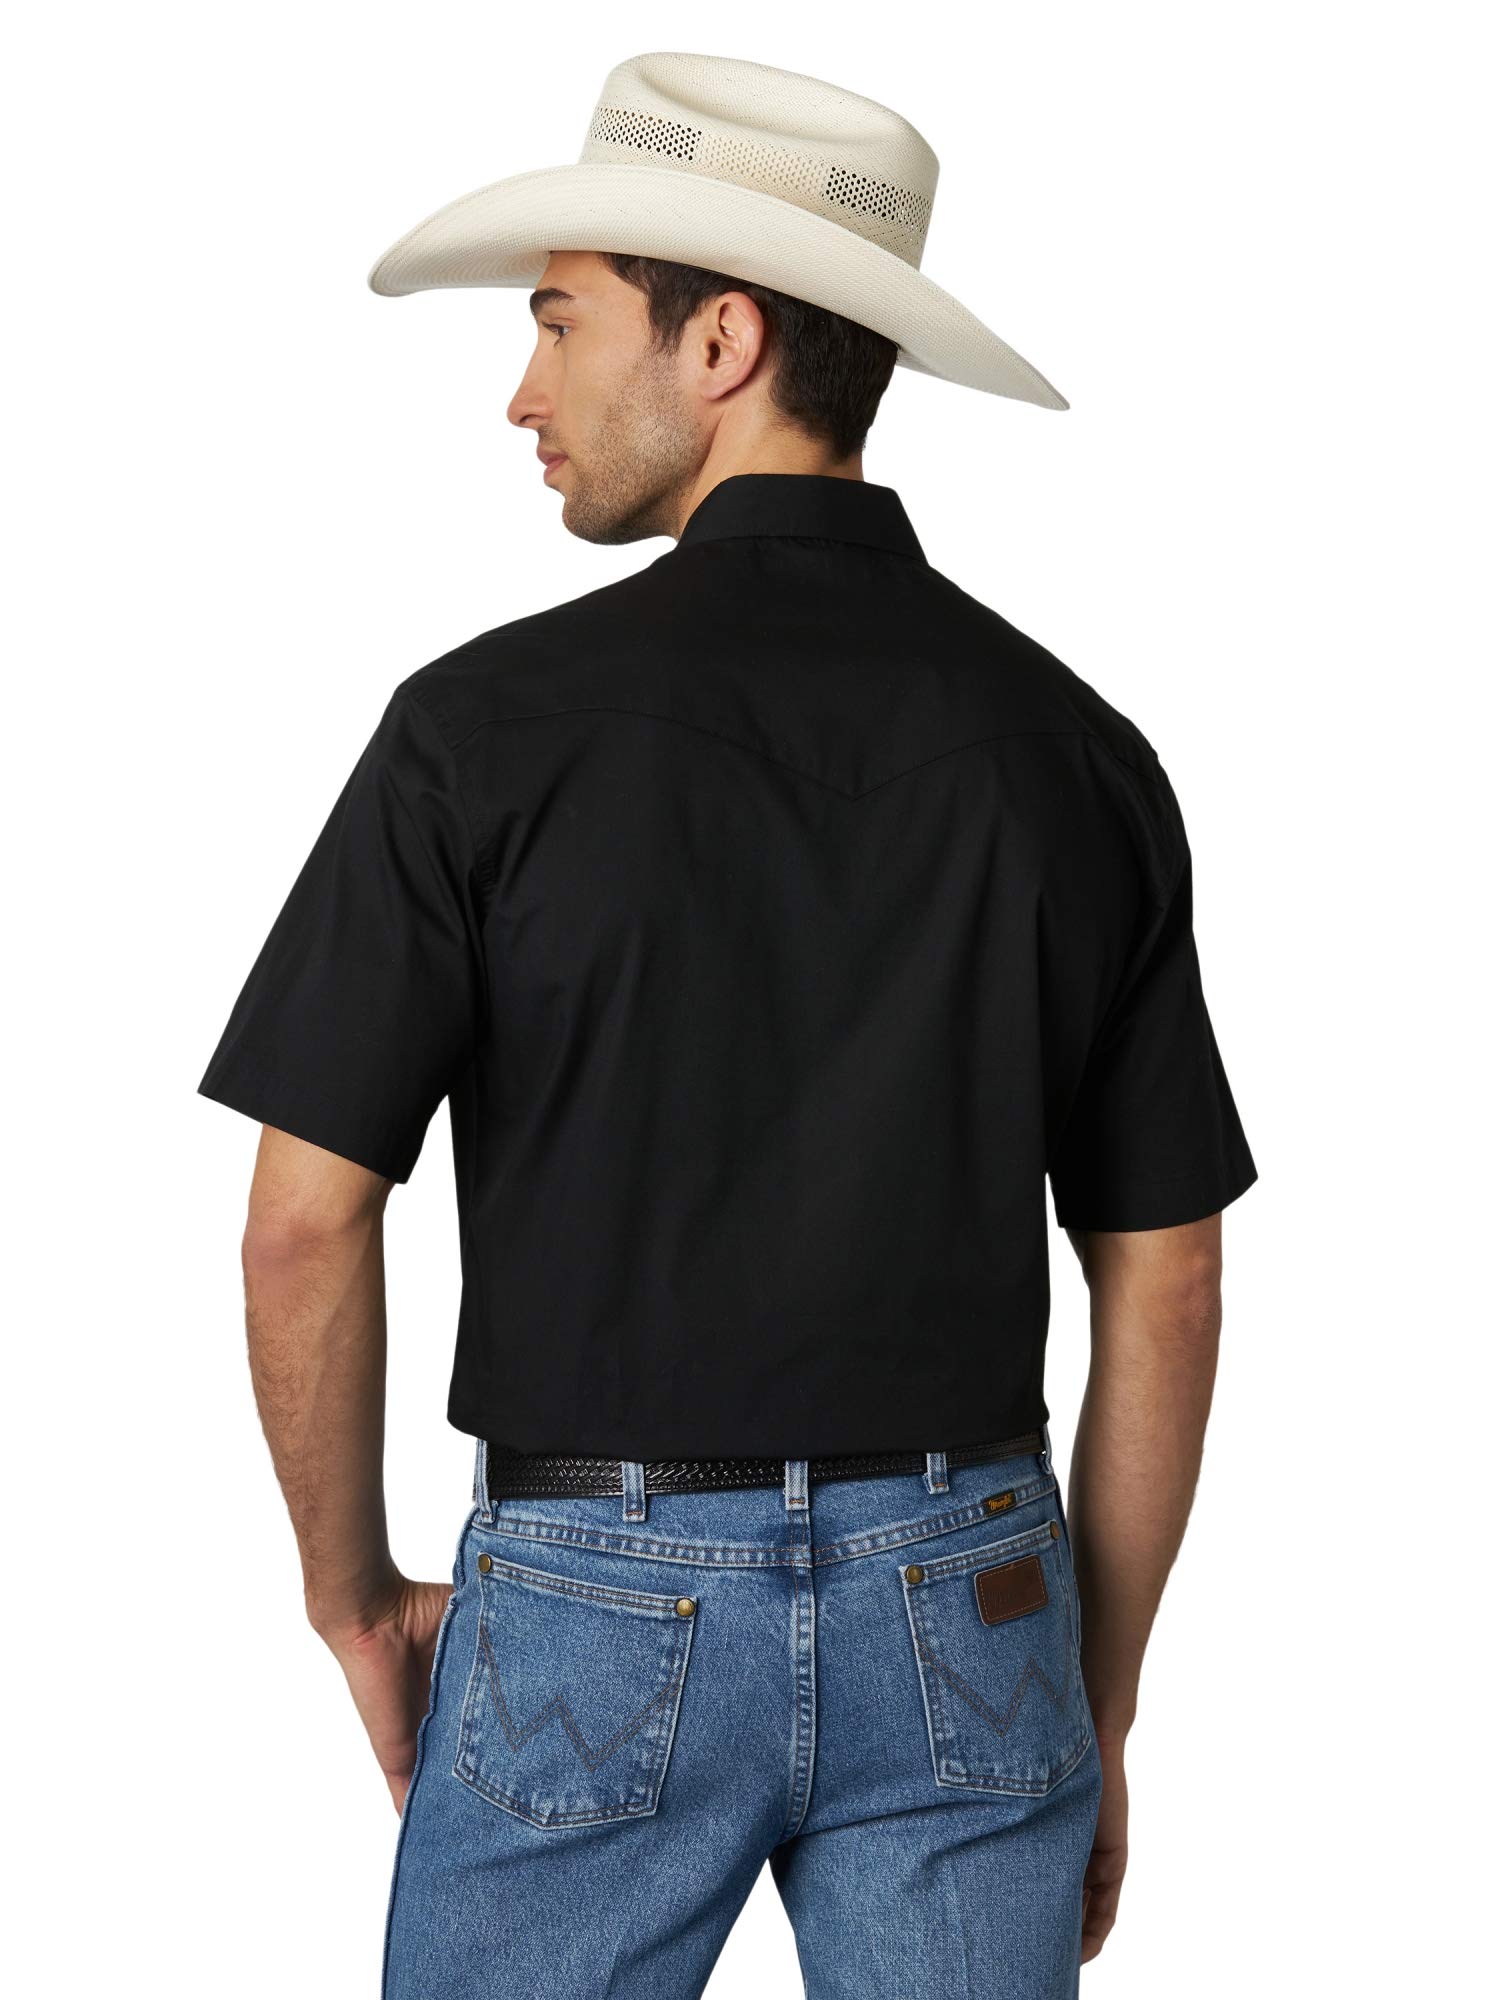 Wrangler Men's Sport Western Basic Two Pocket Short Sleeve Snap Shirt